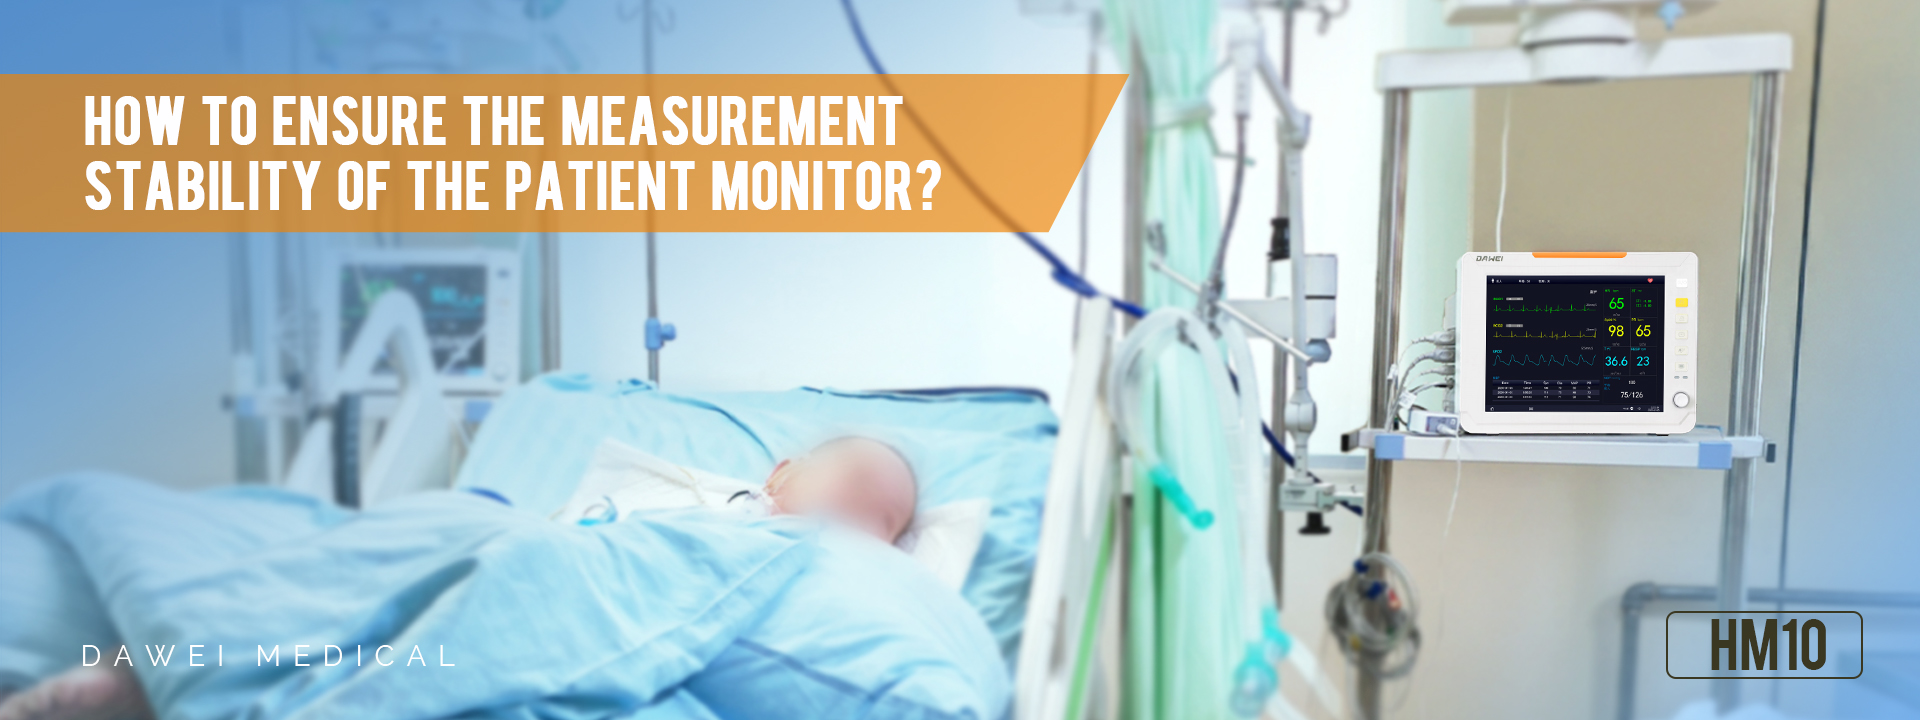 환자 모니터의 측정 안정성을 보장하는 방법은 무엇입니까?